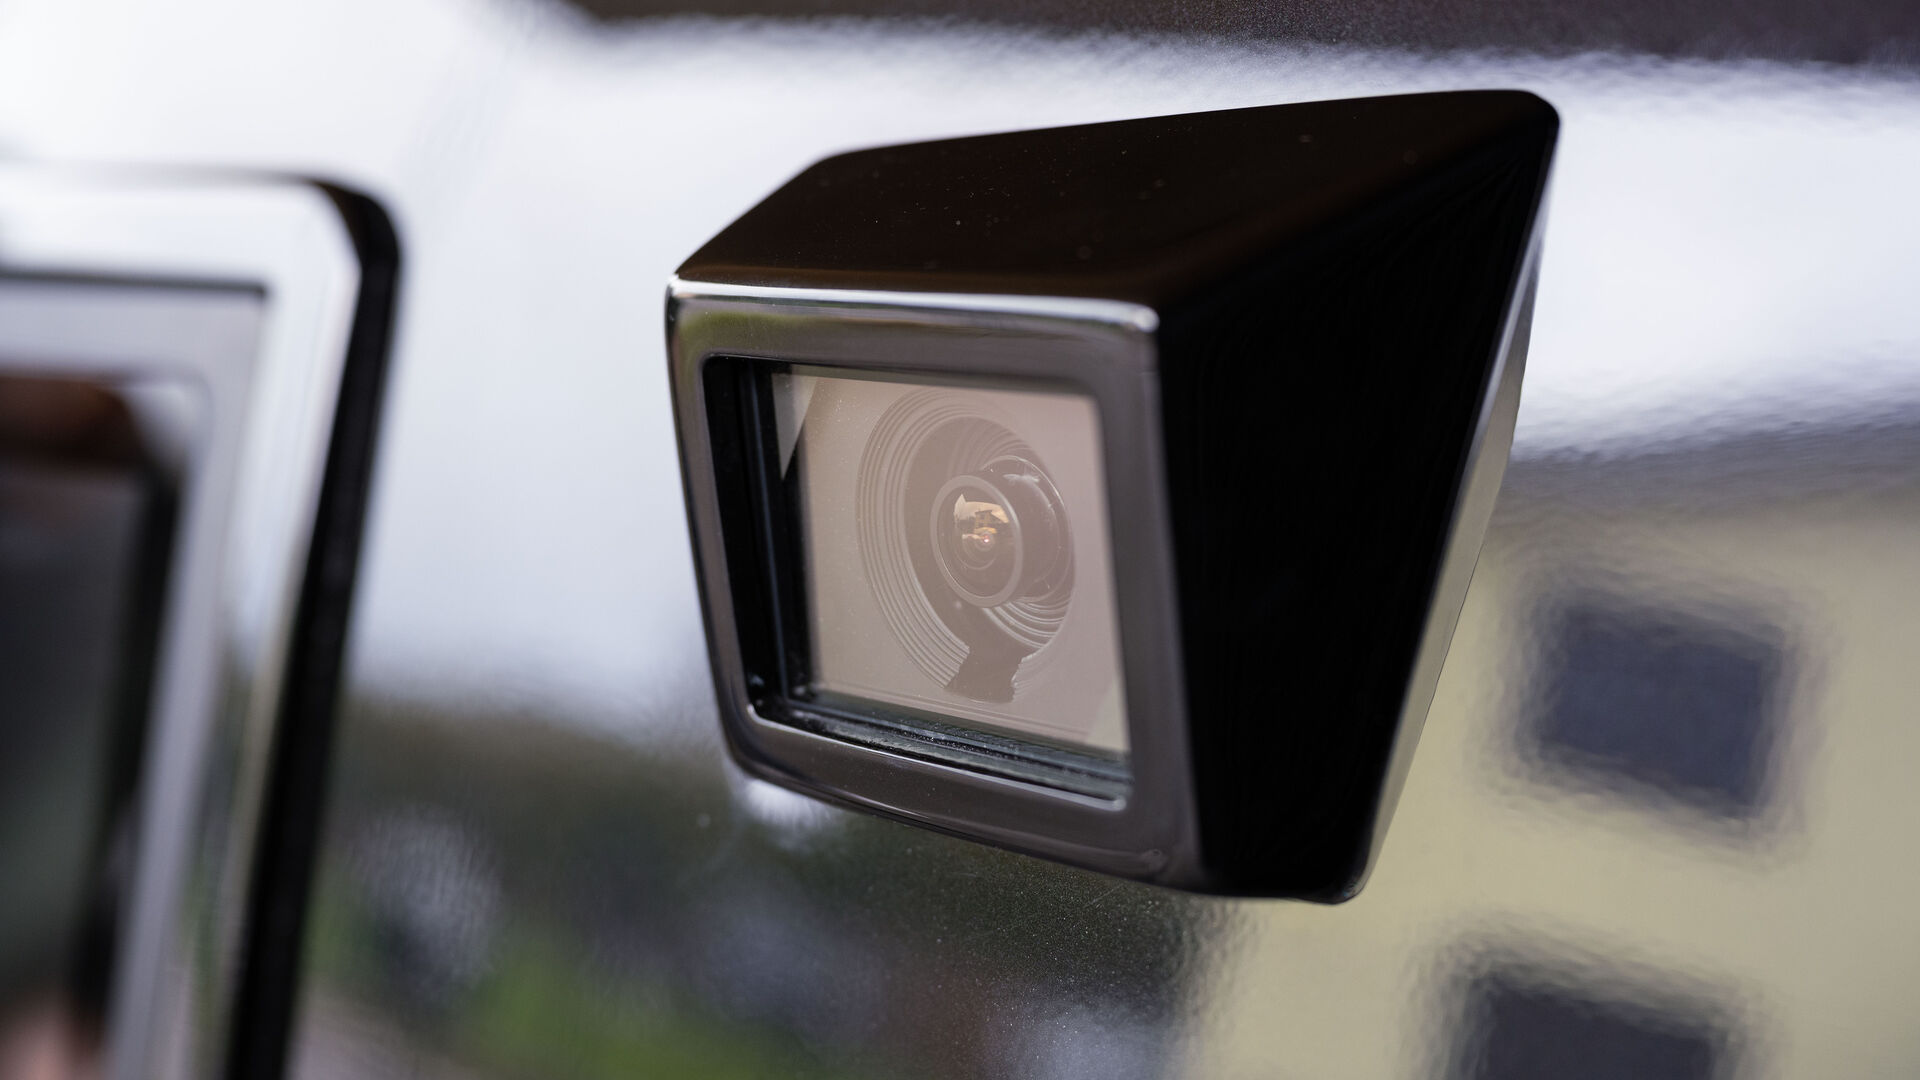 LOXO: กล้องออนบอร์ดสำหรับตรวจสอบการกระทำและการเคลื่อนไหวของรถตู้ขับเคลื่อนอัตโนมัติรุ่น Alpha ซึ่งผลิตในสวิตเซอร์แลนด์ทั้งหมดโดย LOXO สตาร์ทอัพแห่งเบิร์น